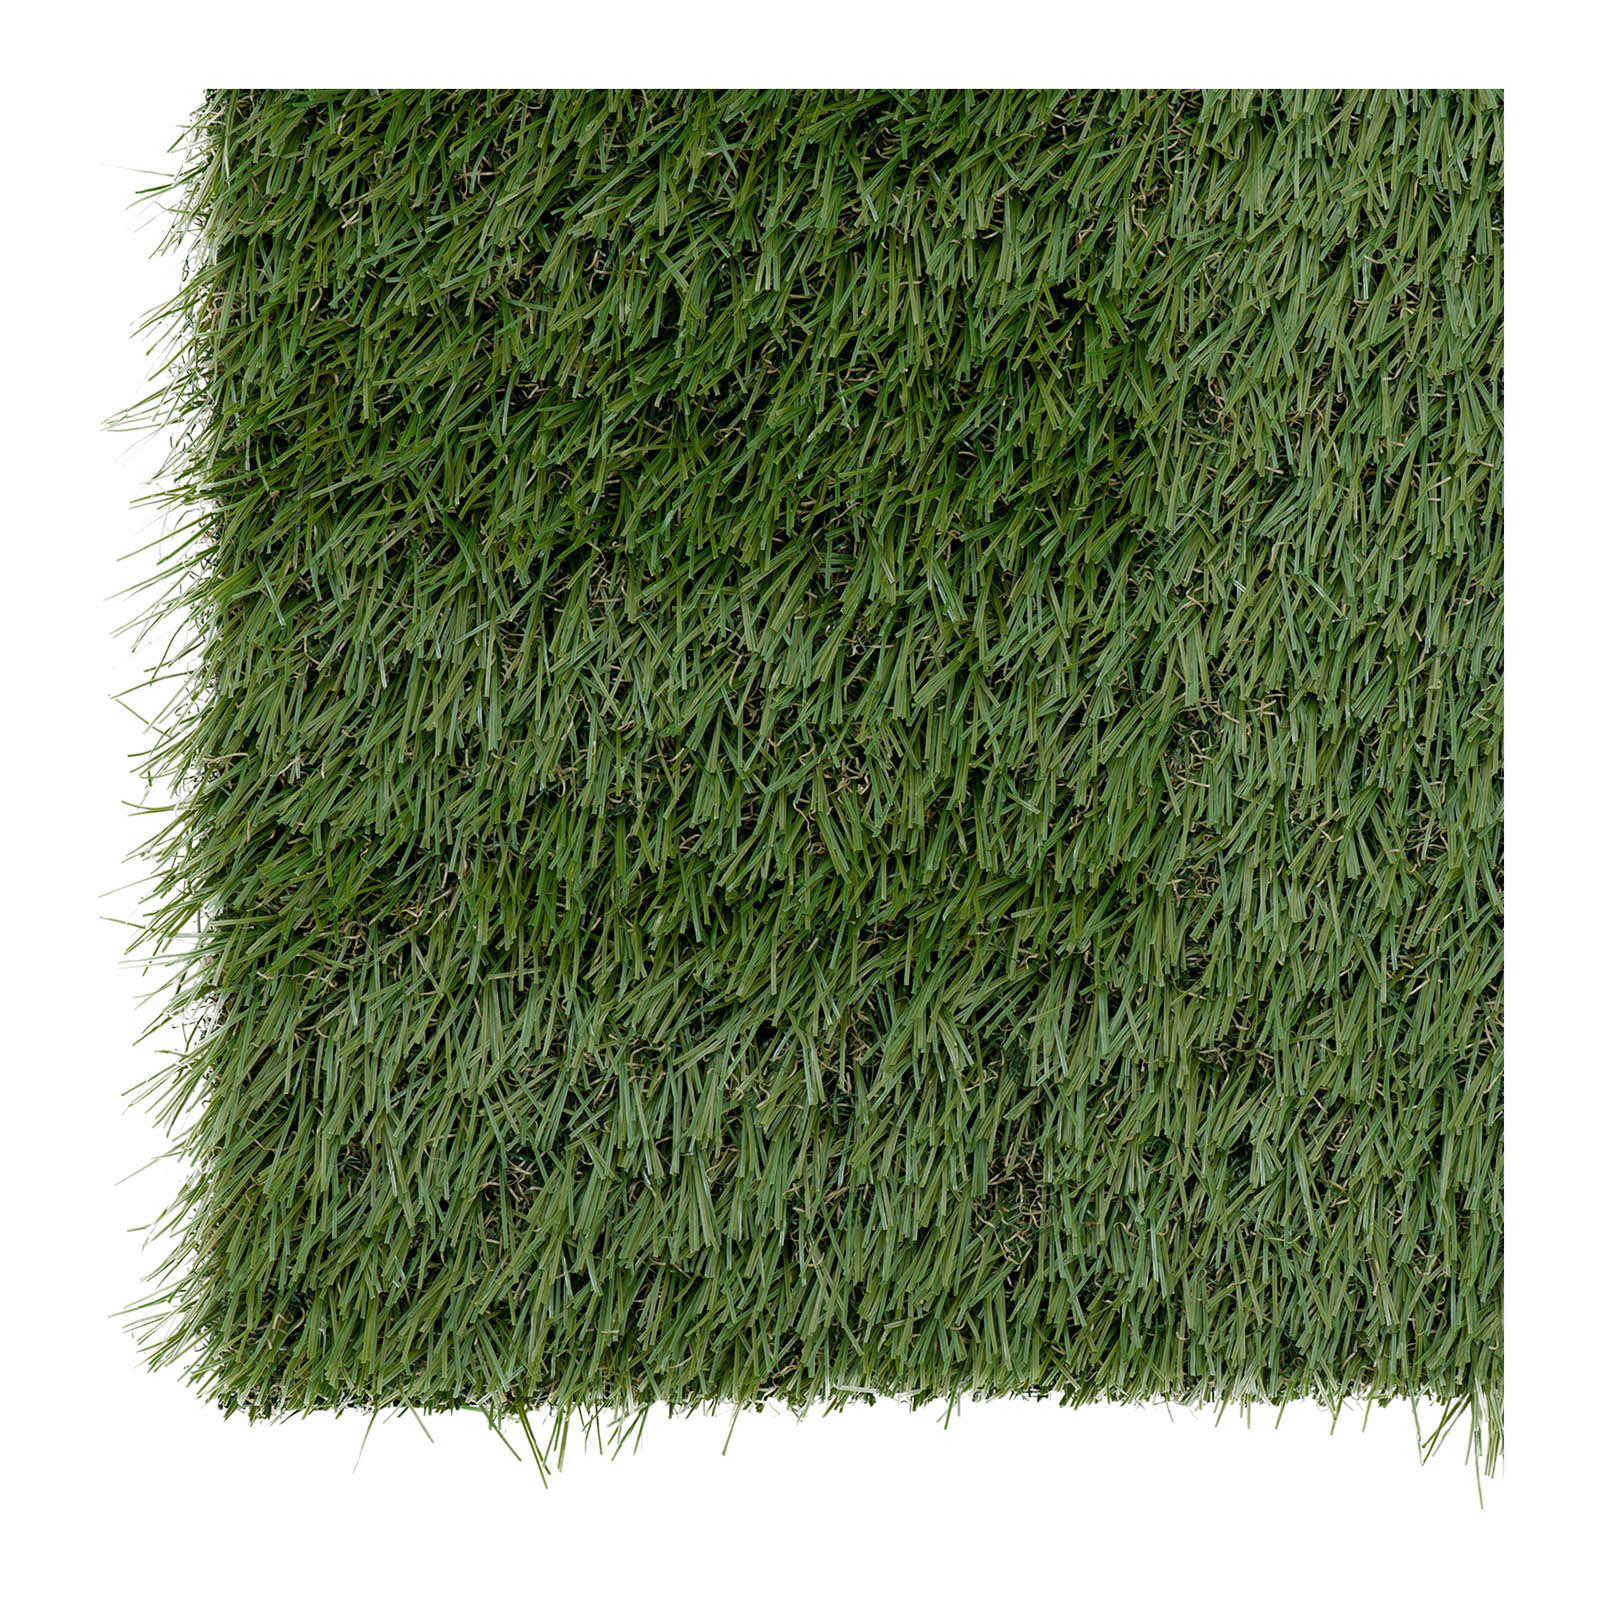 Sztuczna trawa - zestaw 5 sztuk - 100 x 100 cm - wysokość: 30 mm - szybkość ściegu: 14/10 cm - odporność na promieniowanie UV